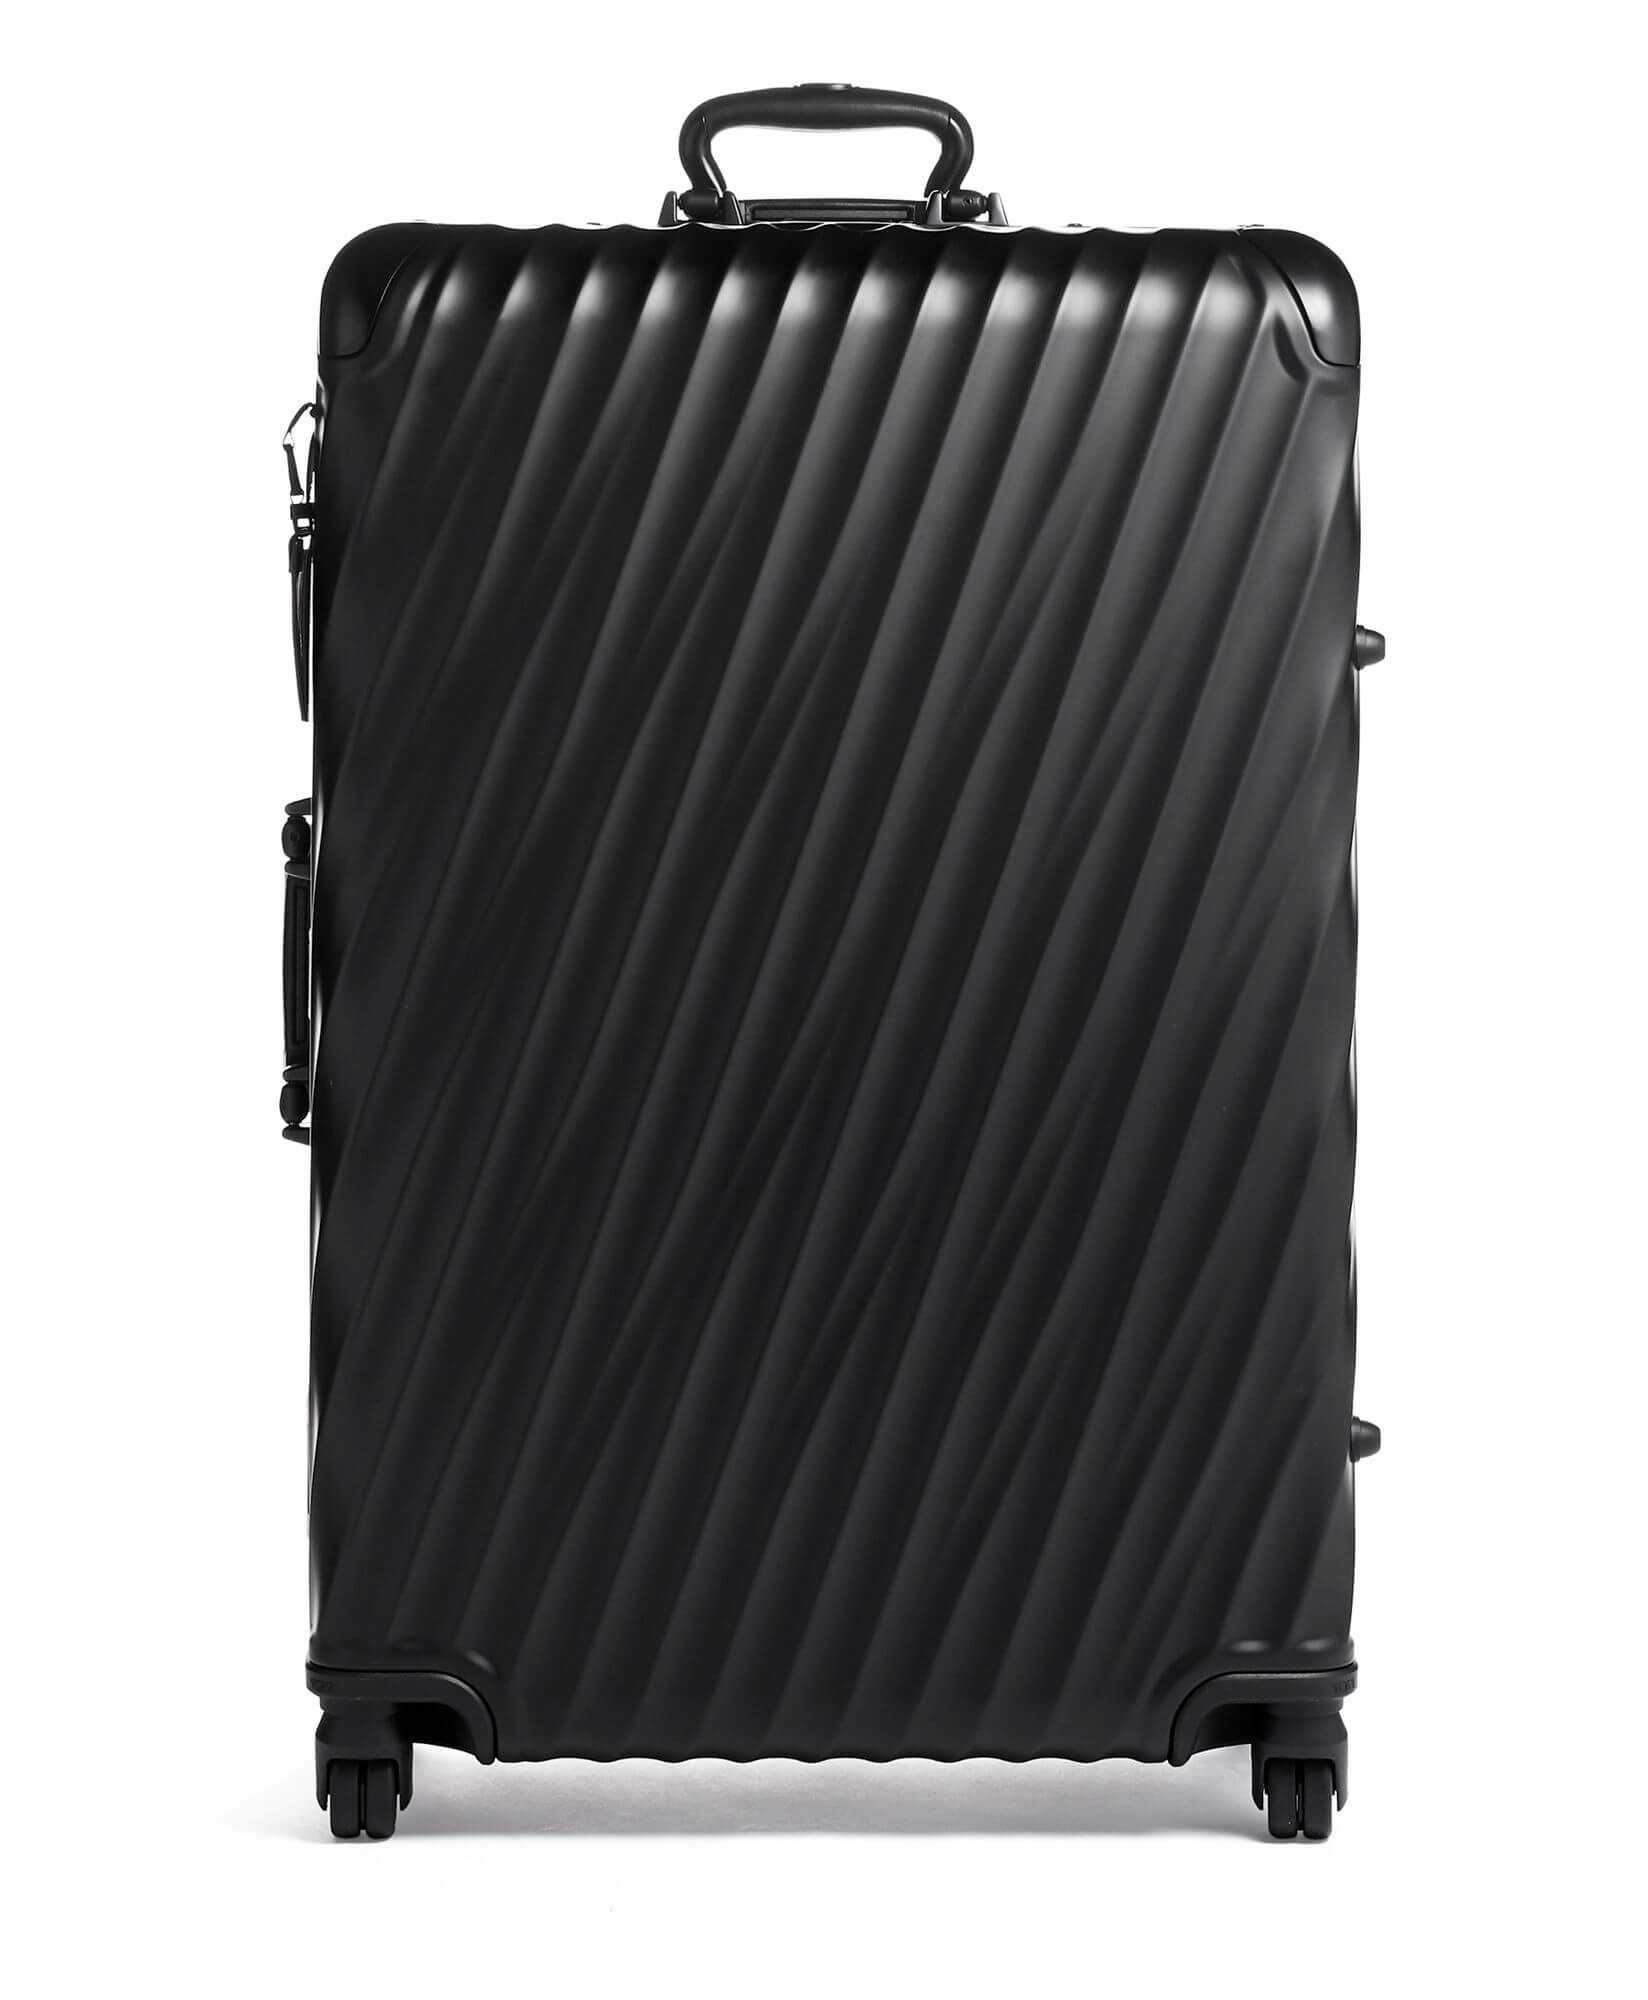 tumi extended trip packing case black aluminum design